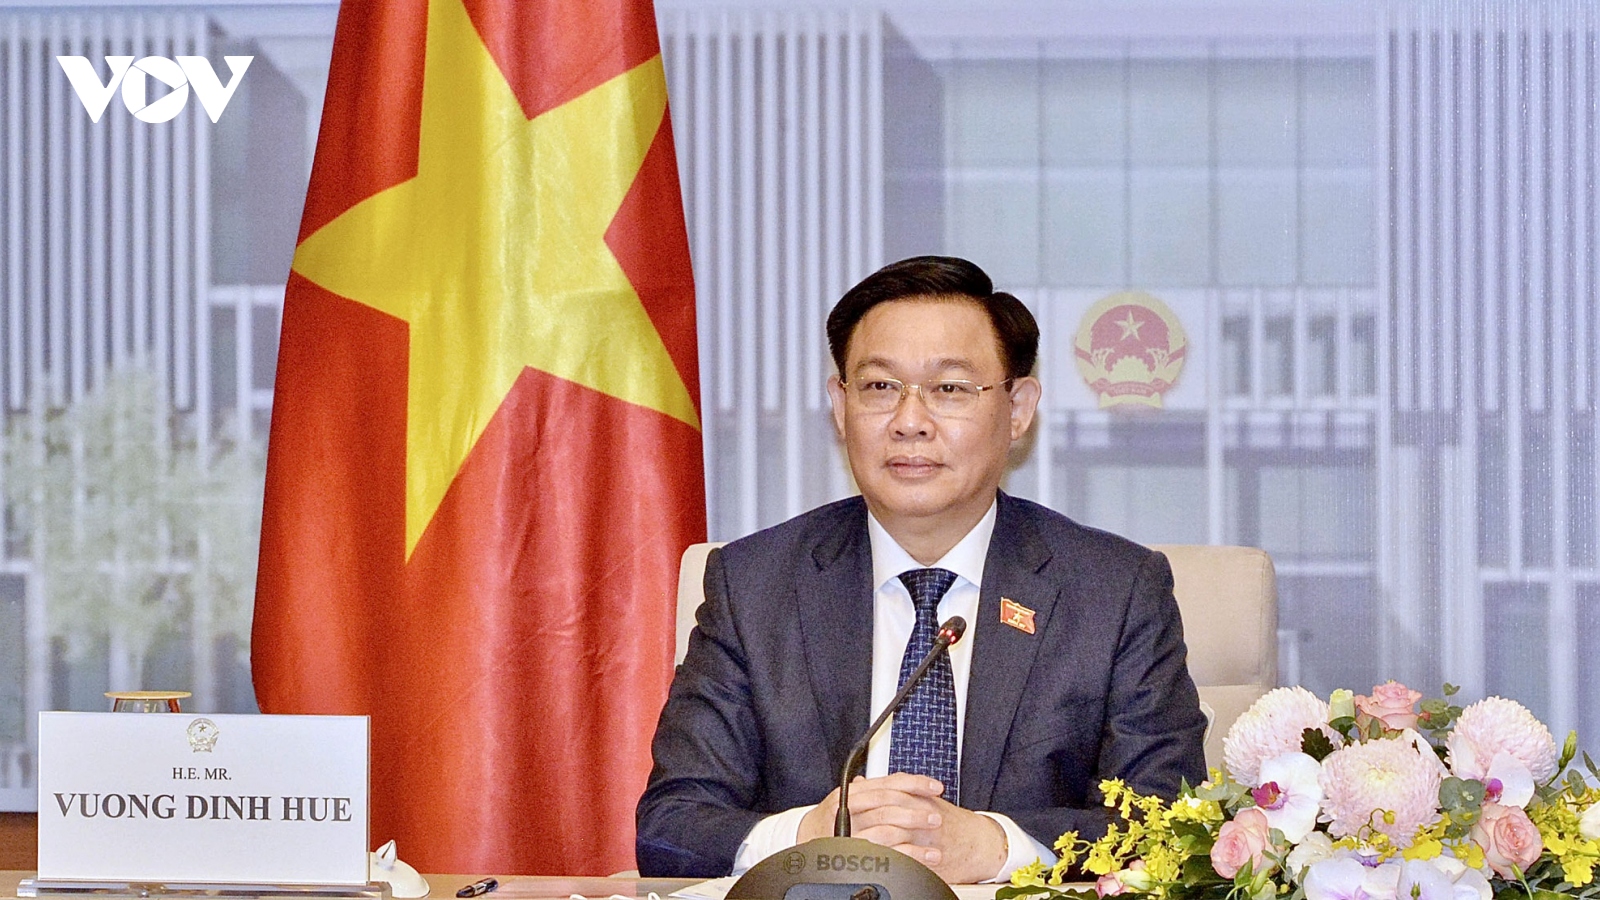 Chủ tịch Quốc hội Vương Đình Huệ hội đàm trực tuyến với Chủ tịch Nhân đại Trung Quốc